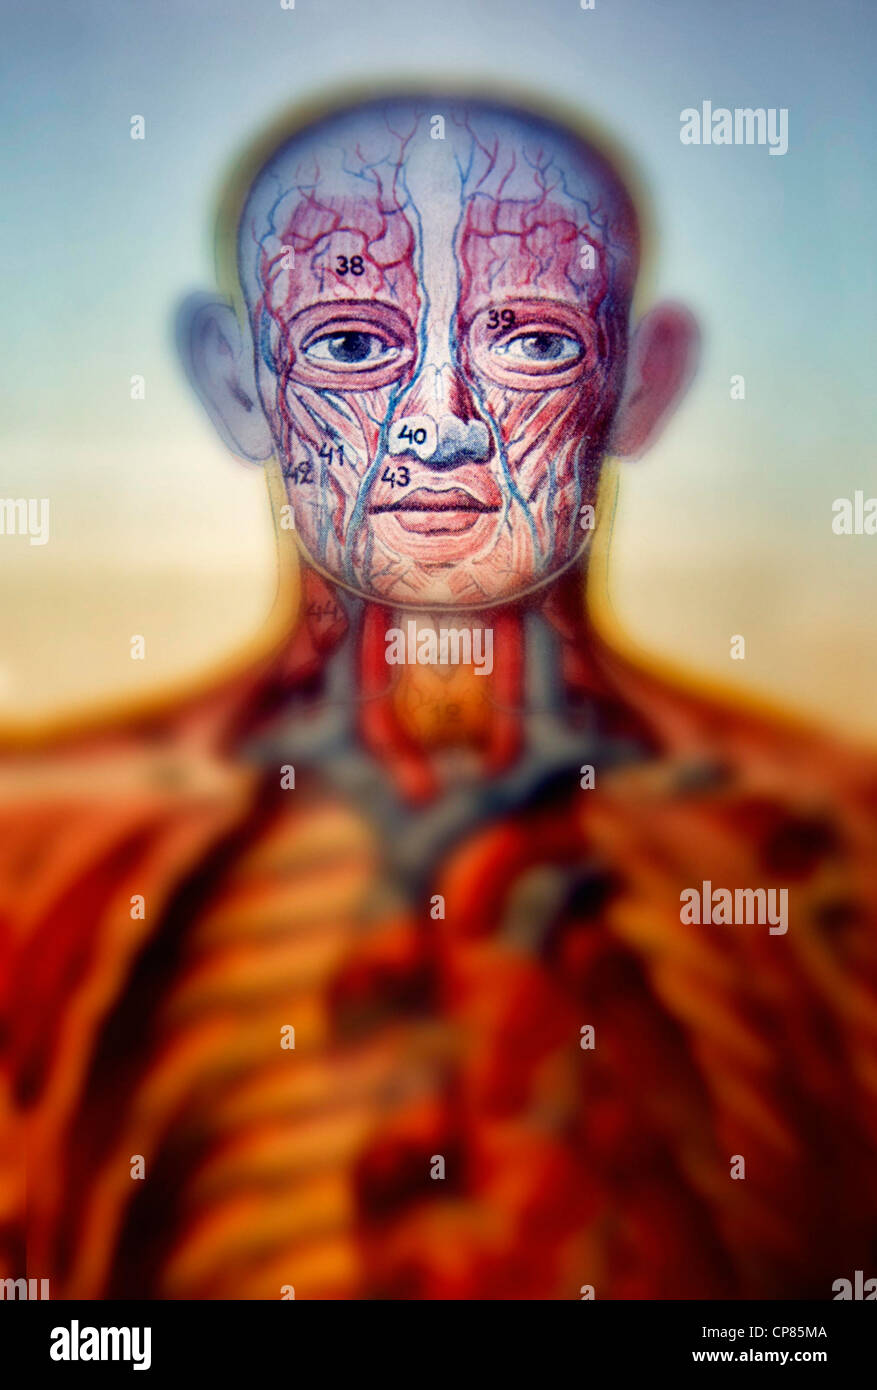 Anatomy, medical illustration of human beings, Aufklappbare anatomische, medizinische Darstellung des Mannes, digital bearbeitet Stock Photo